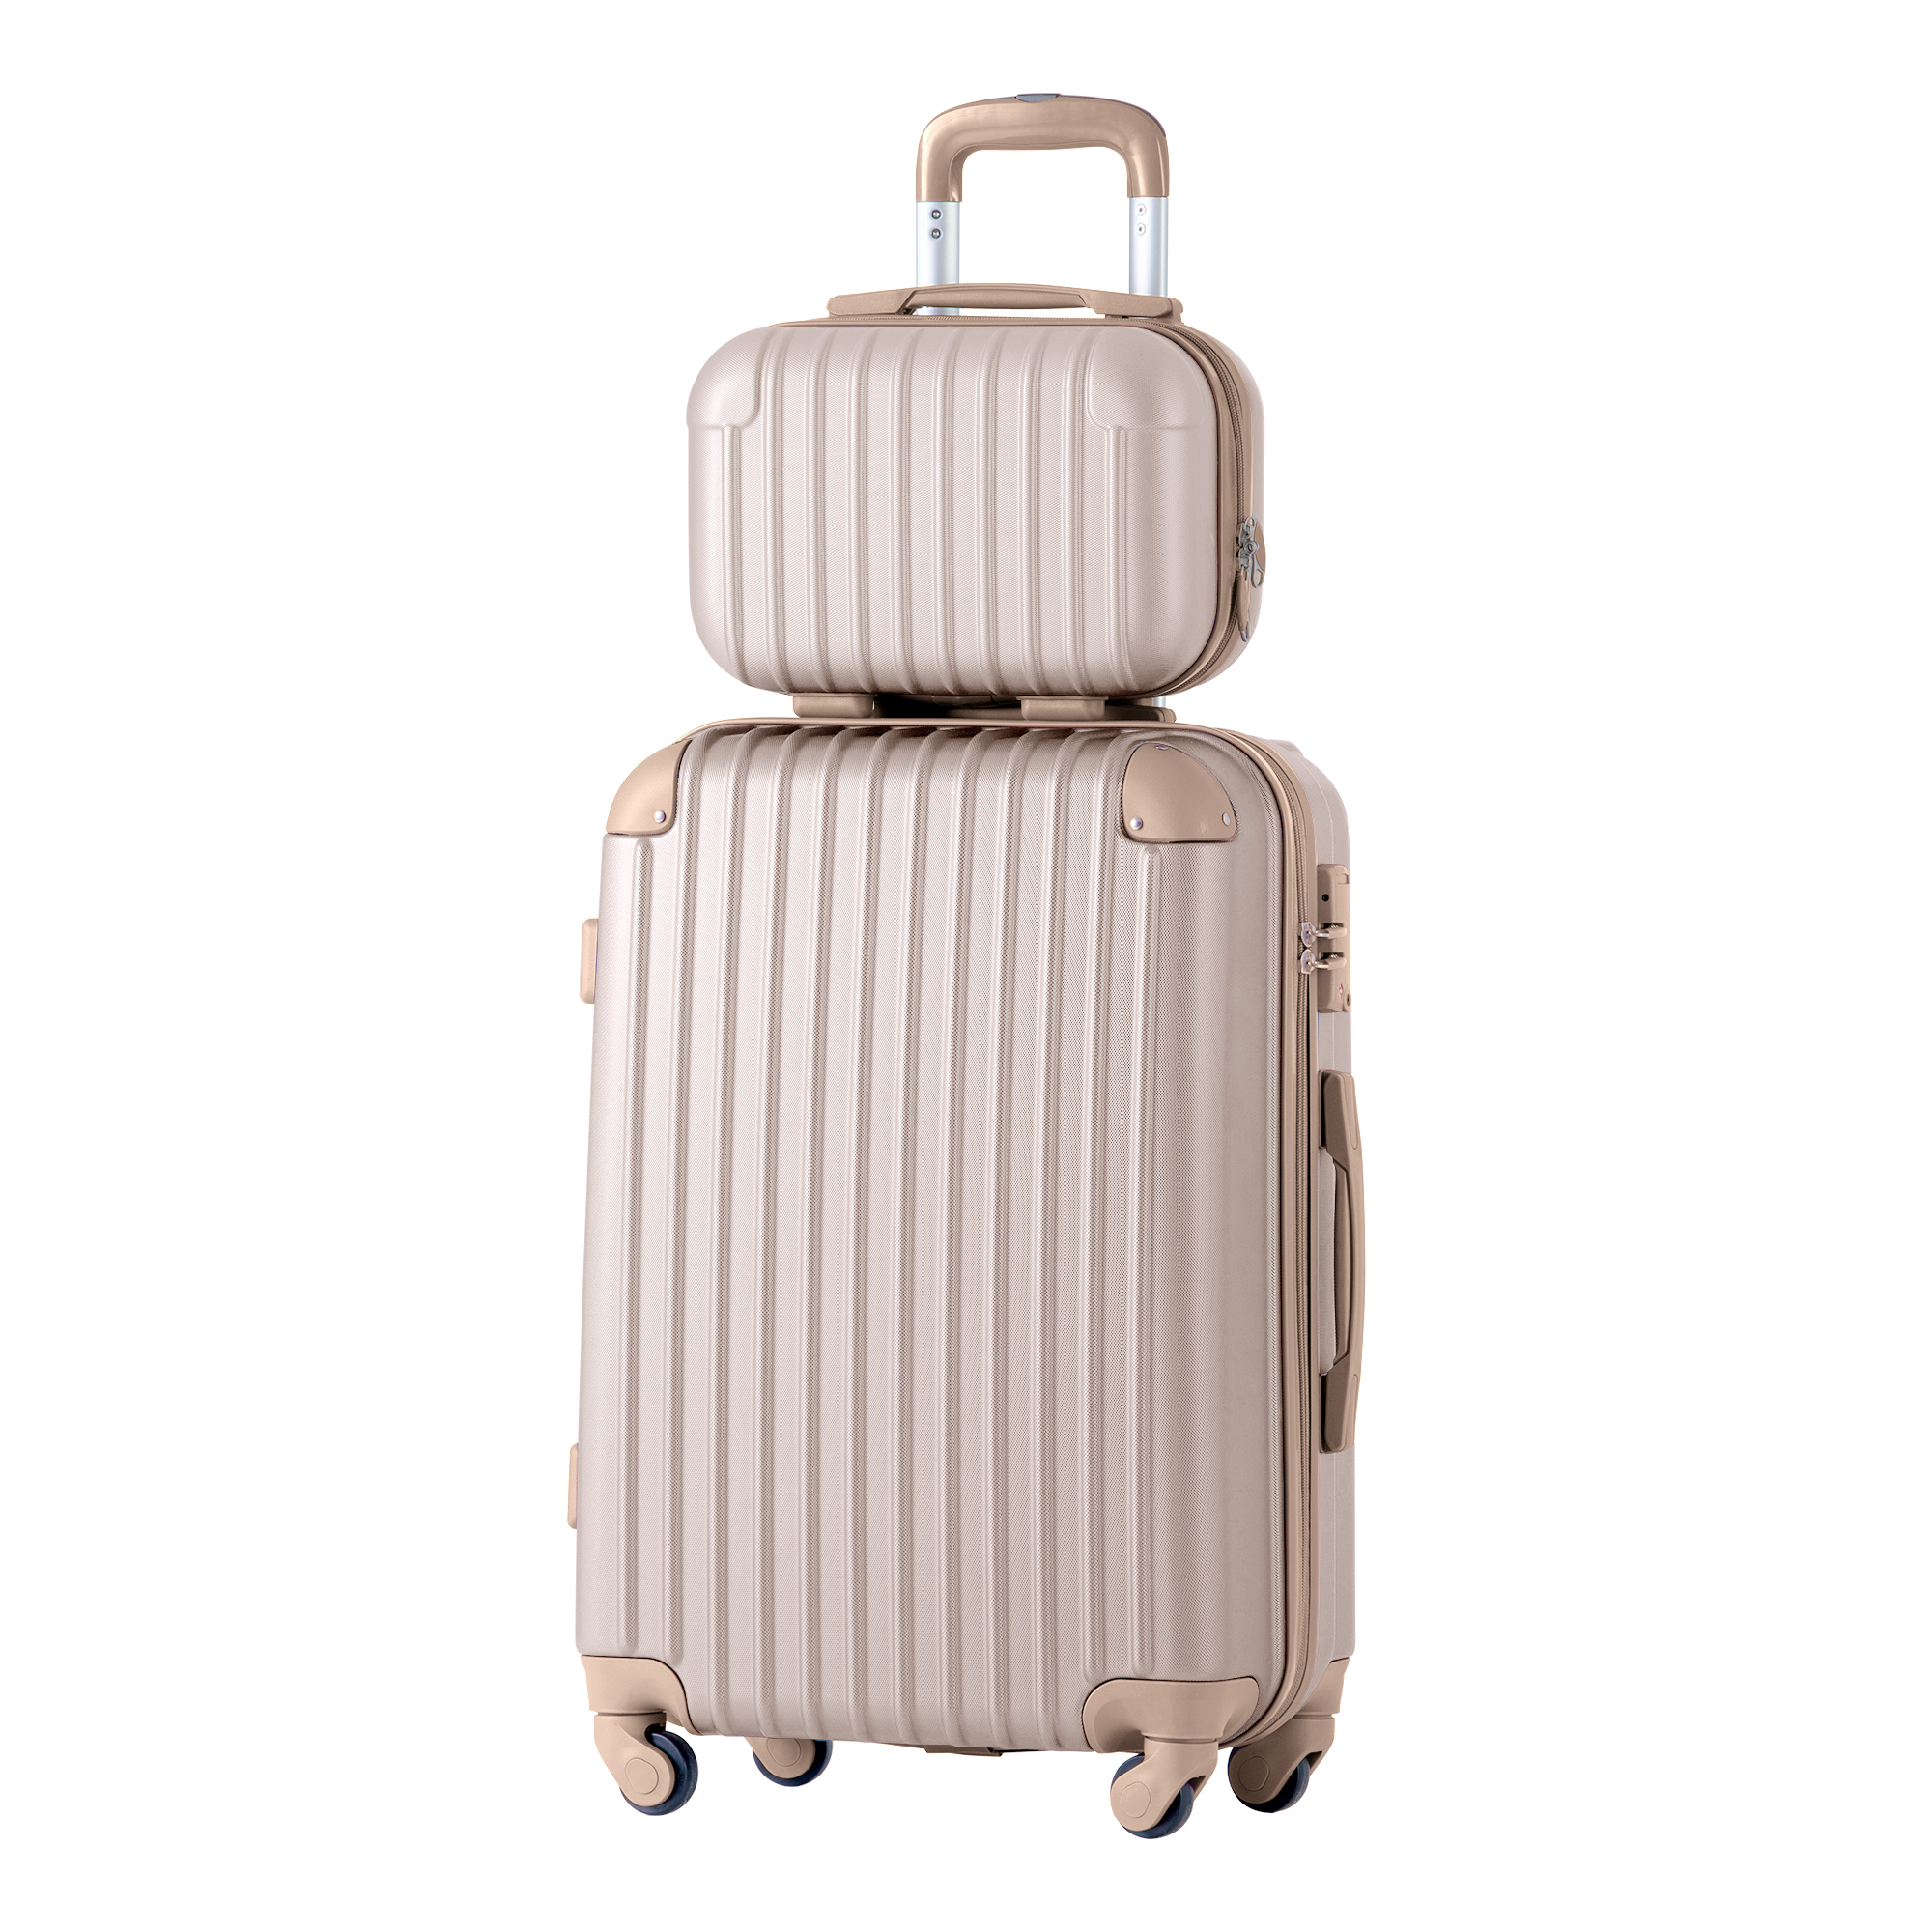 クーポン対象外】 Mサイズ スーツケース キャリーケースTSAロック搭載超軽量 4日-7日 中型